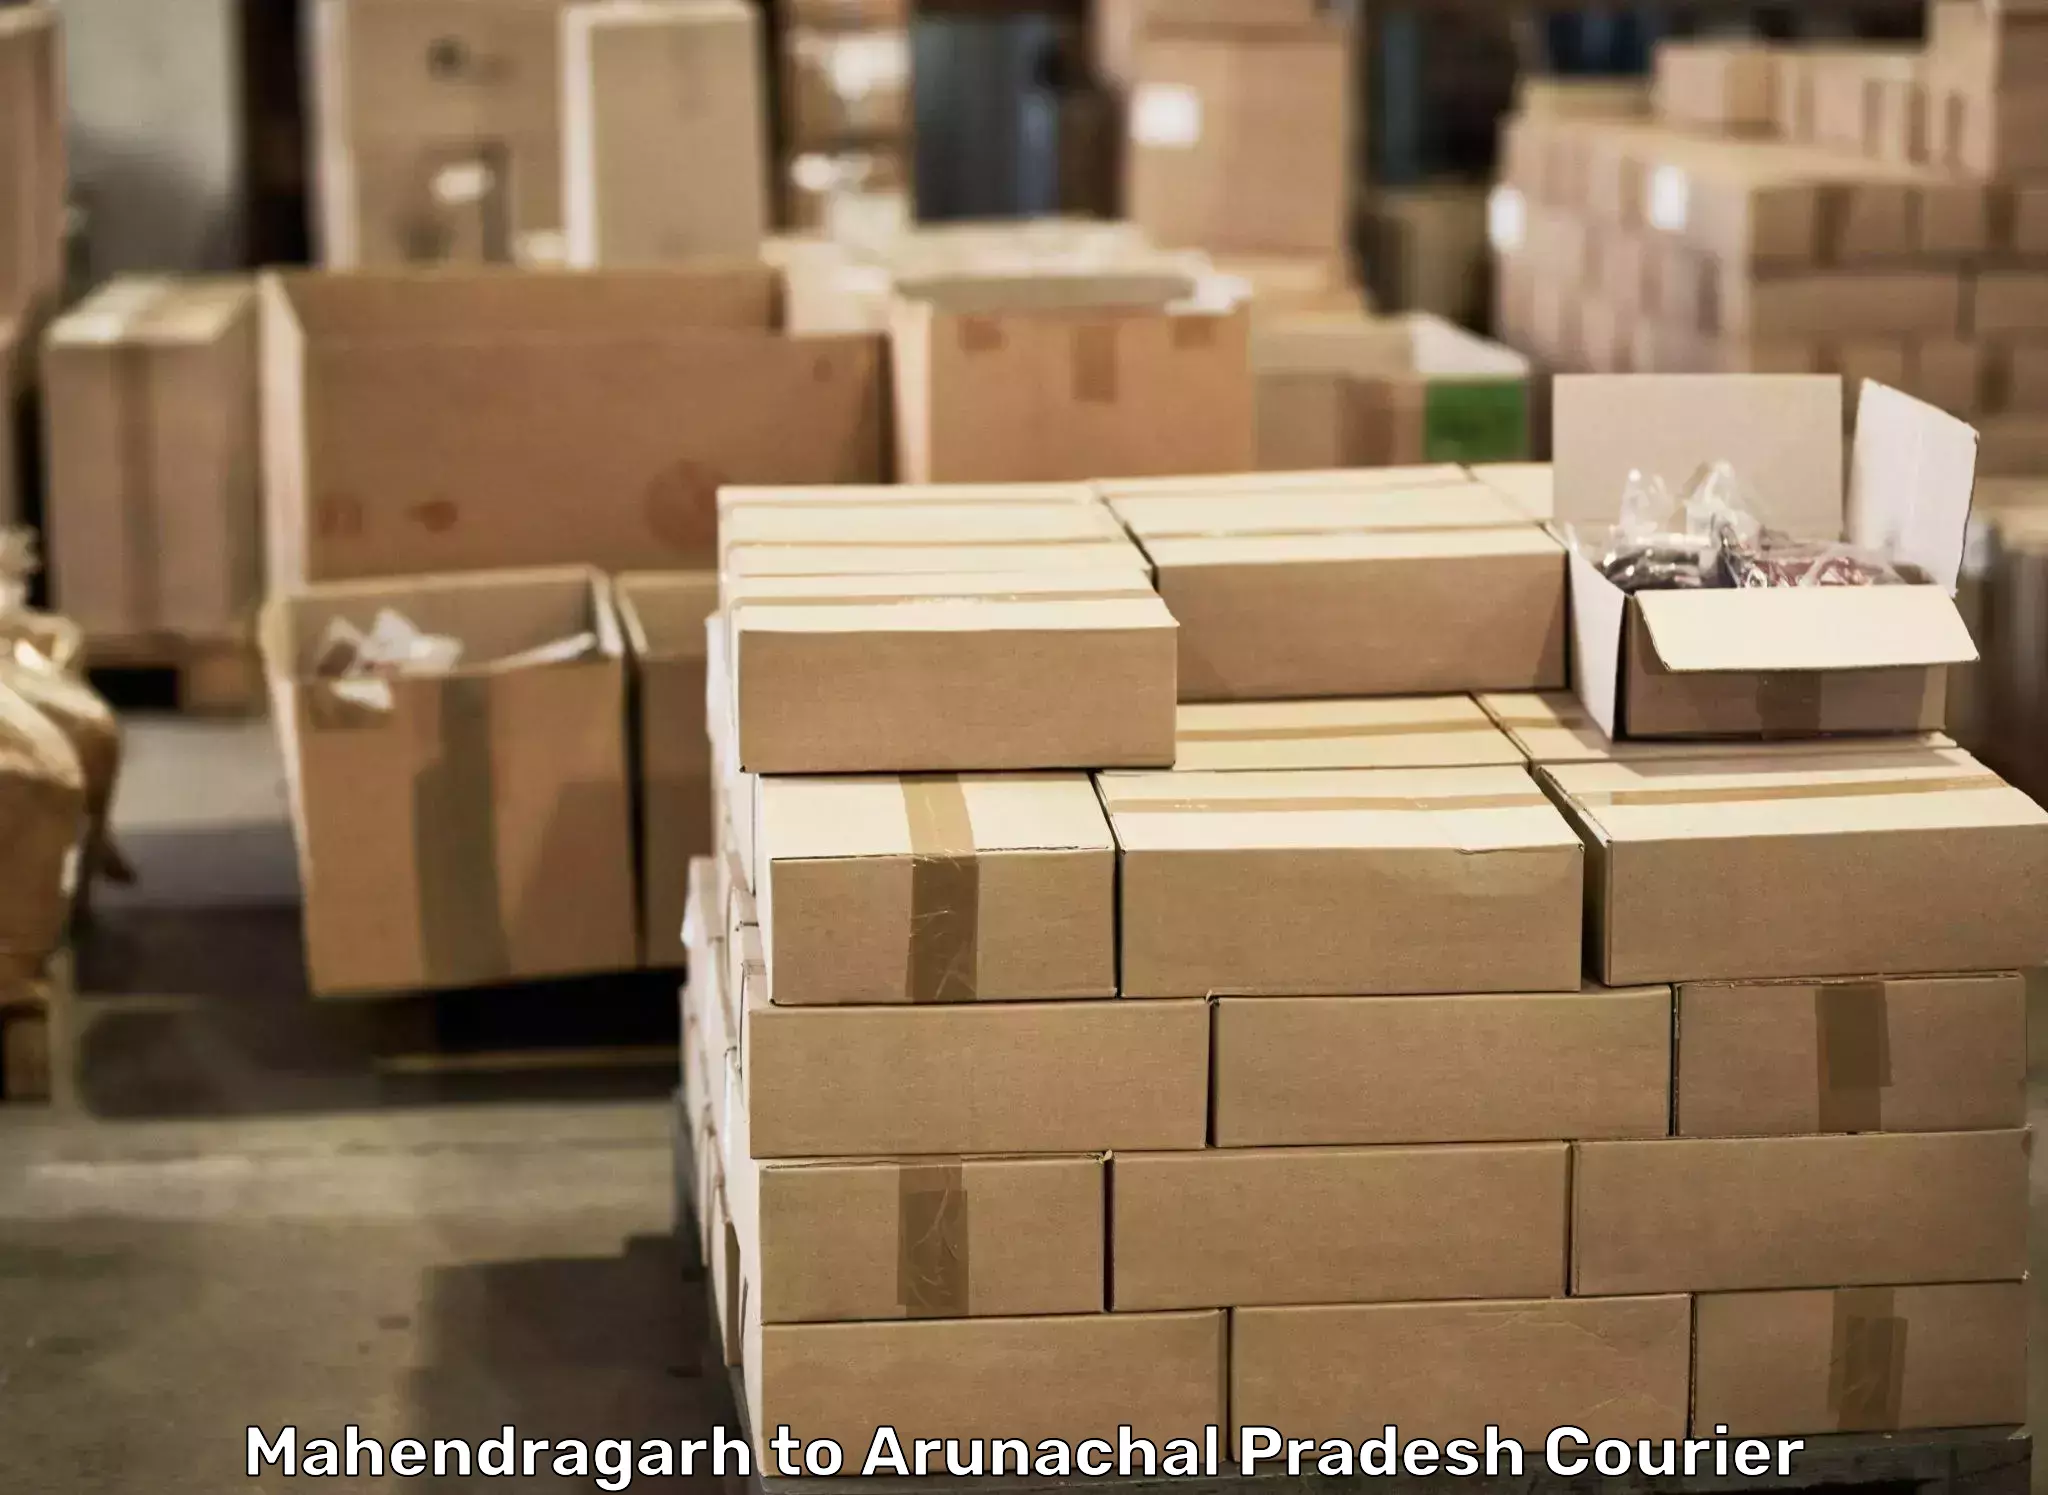 Full-service household moving Mahendragarh to Arunachal Pradesh